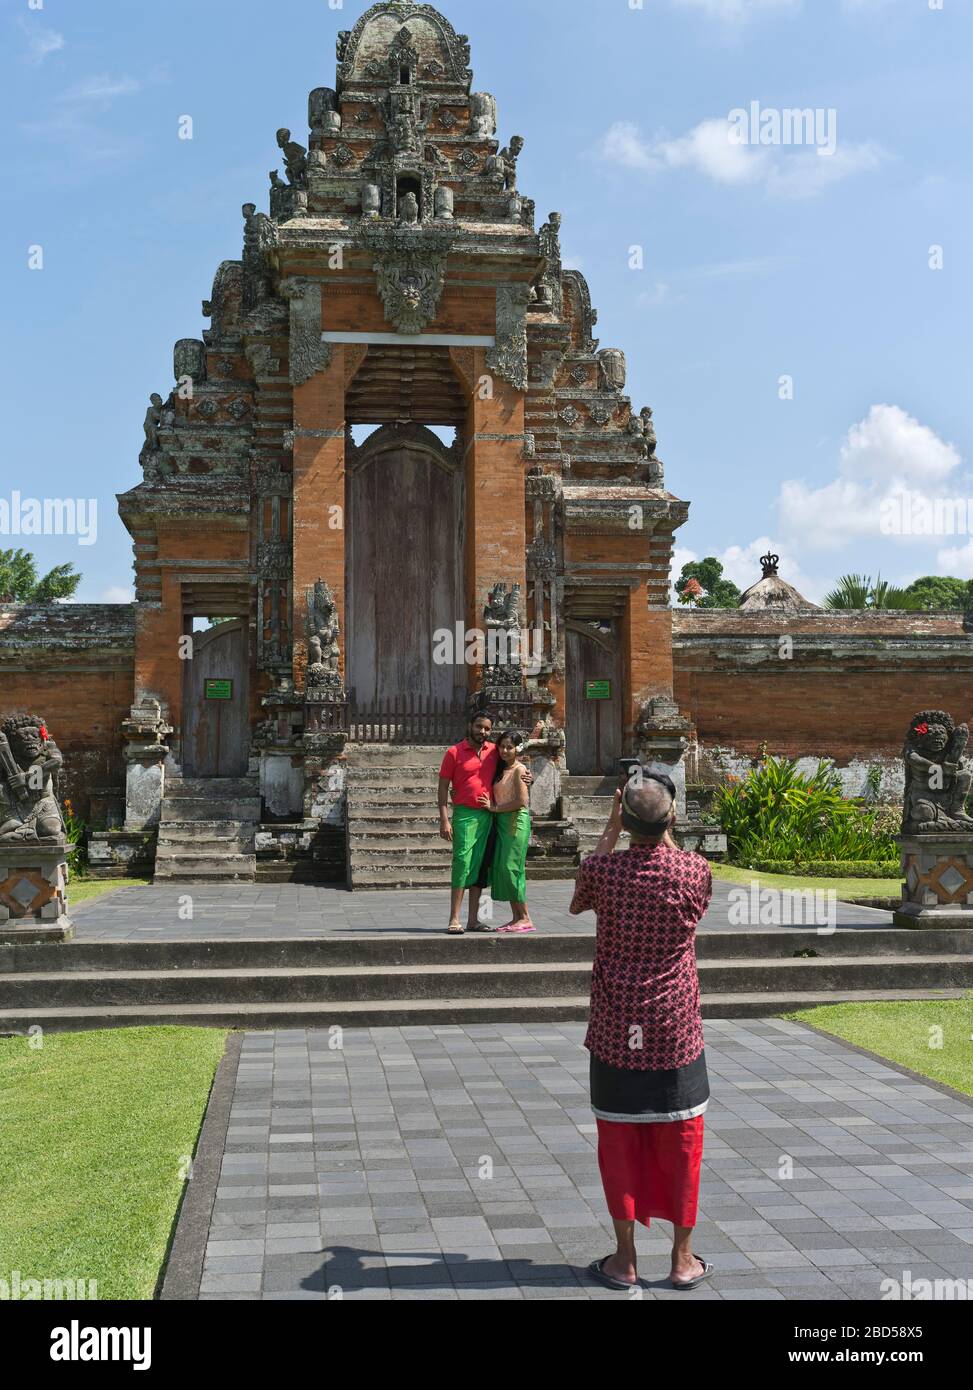 dh Pura Taman Ayun Königlicher Tempel BALI INDONESIEN Touristen sein Foto balinesische Hindu Mengwi Tempel Paduraksa hinduismus Tor Architektur Tourist Stockfoto